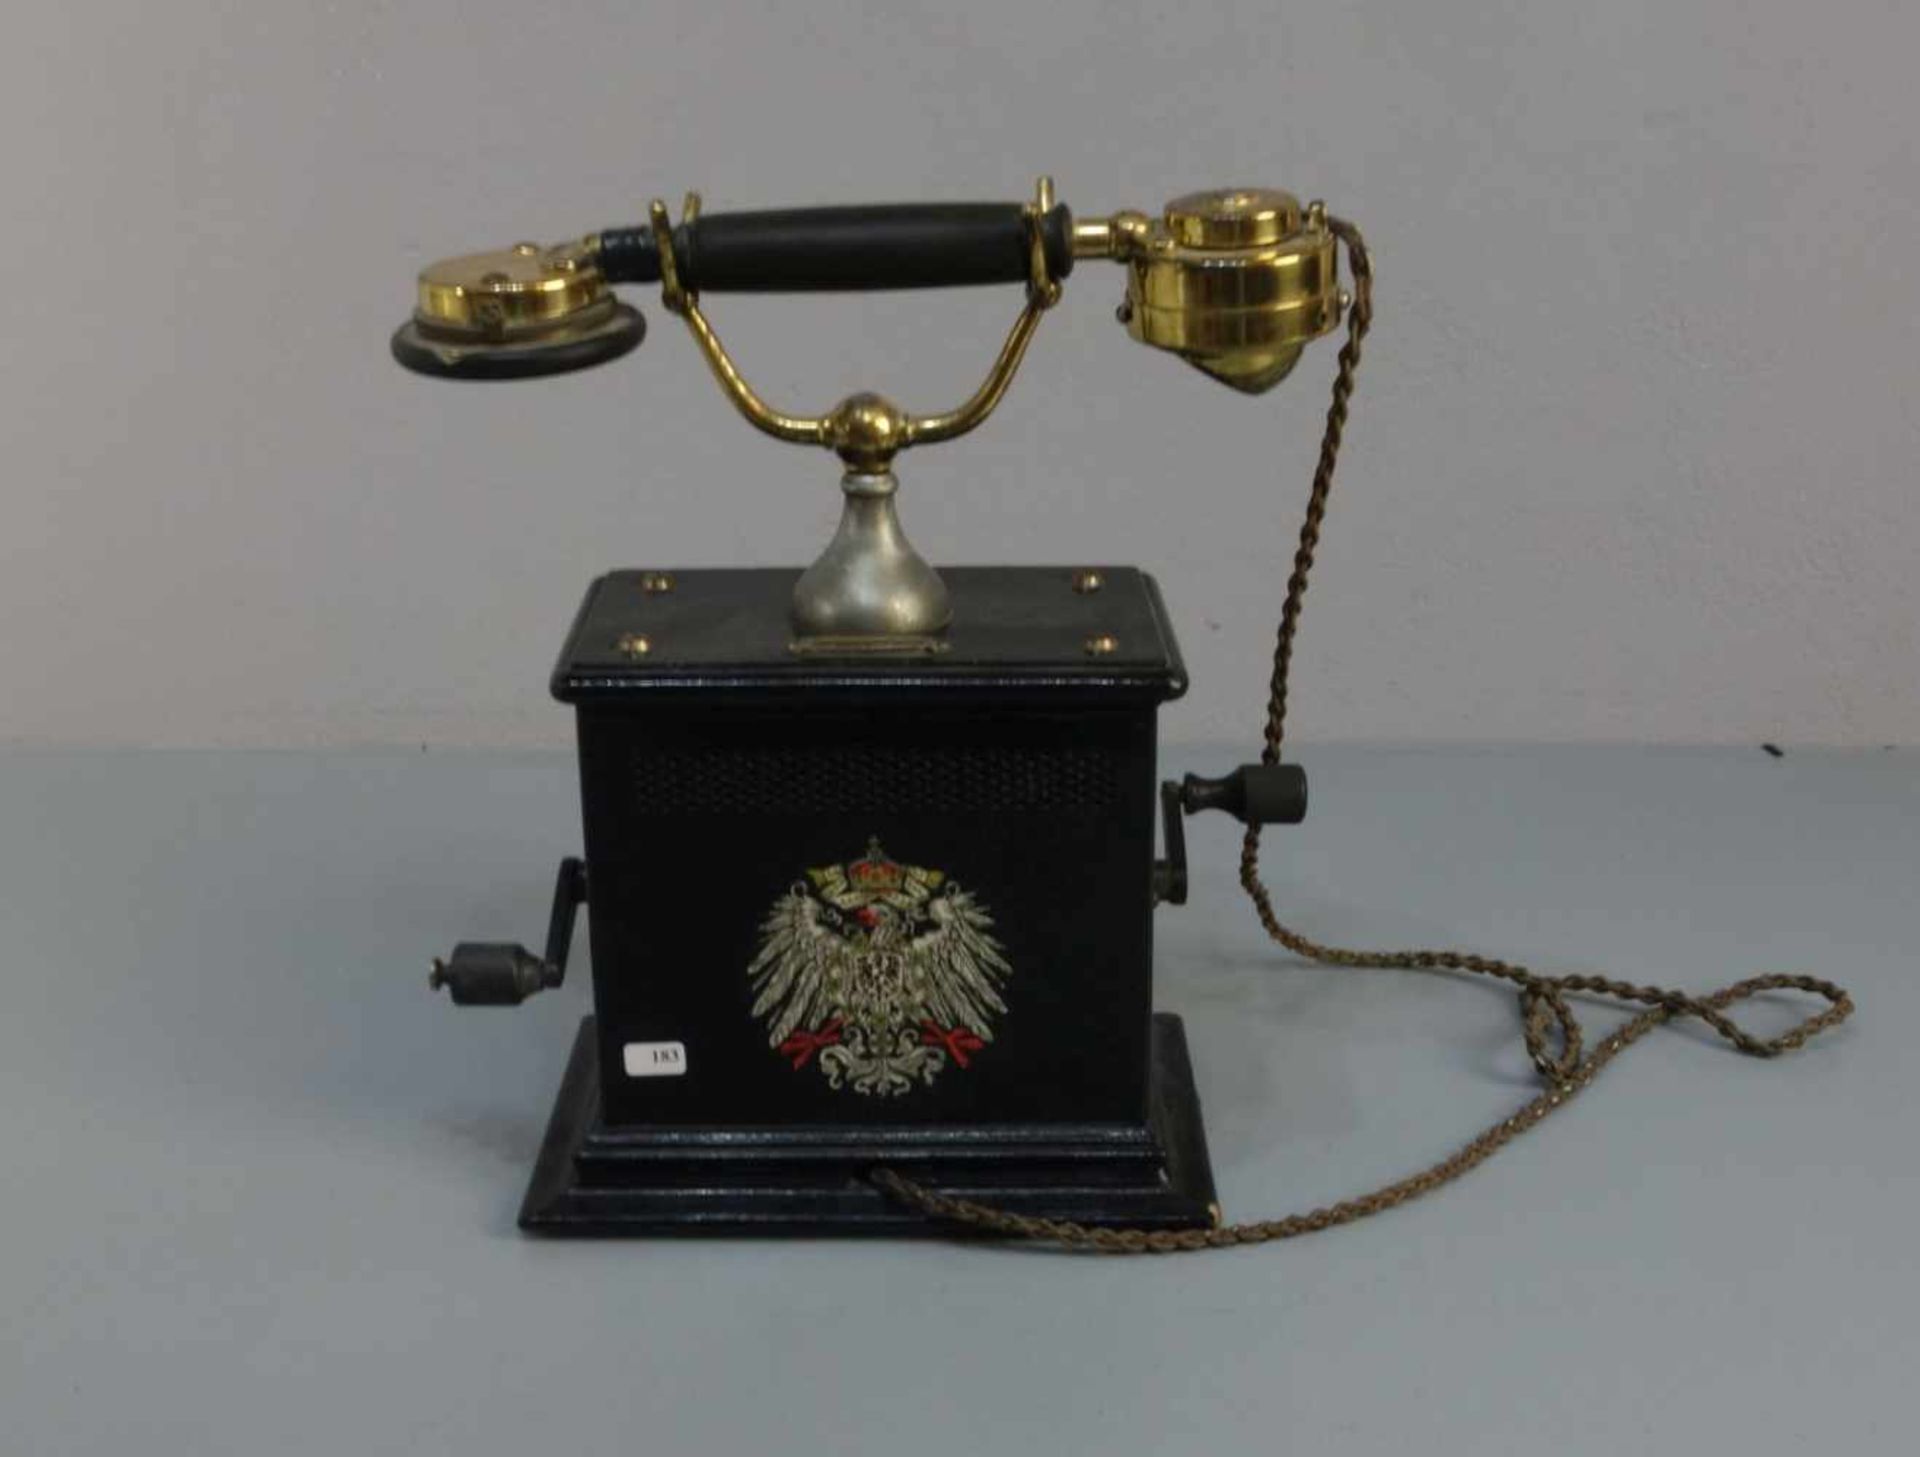 TELEFON / KURBEL-FERNSPRECHAPPARAT DER DEUTSCHEN KAISERZEIT / telephone; schwarz lackierter